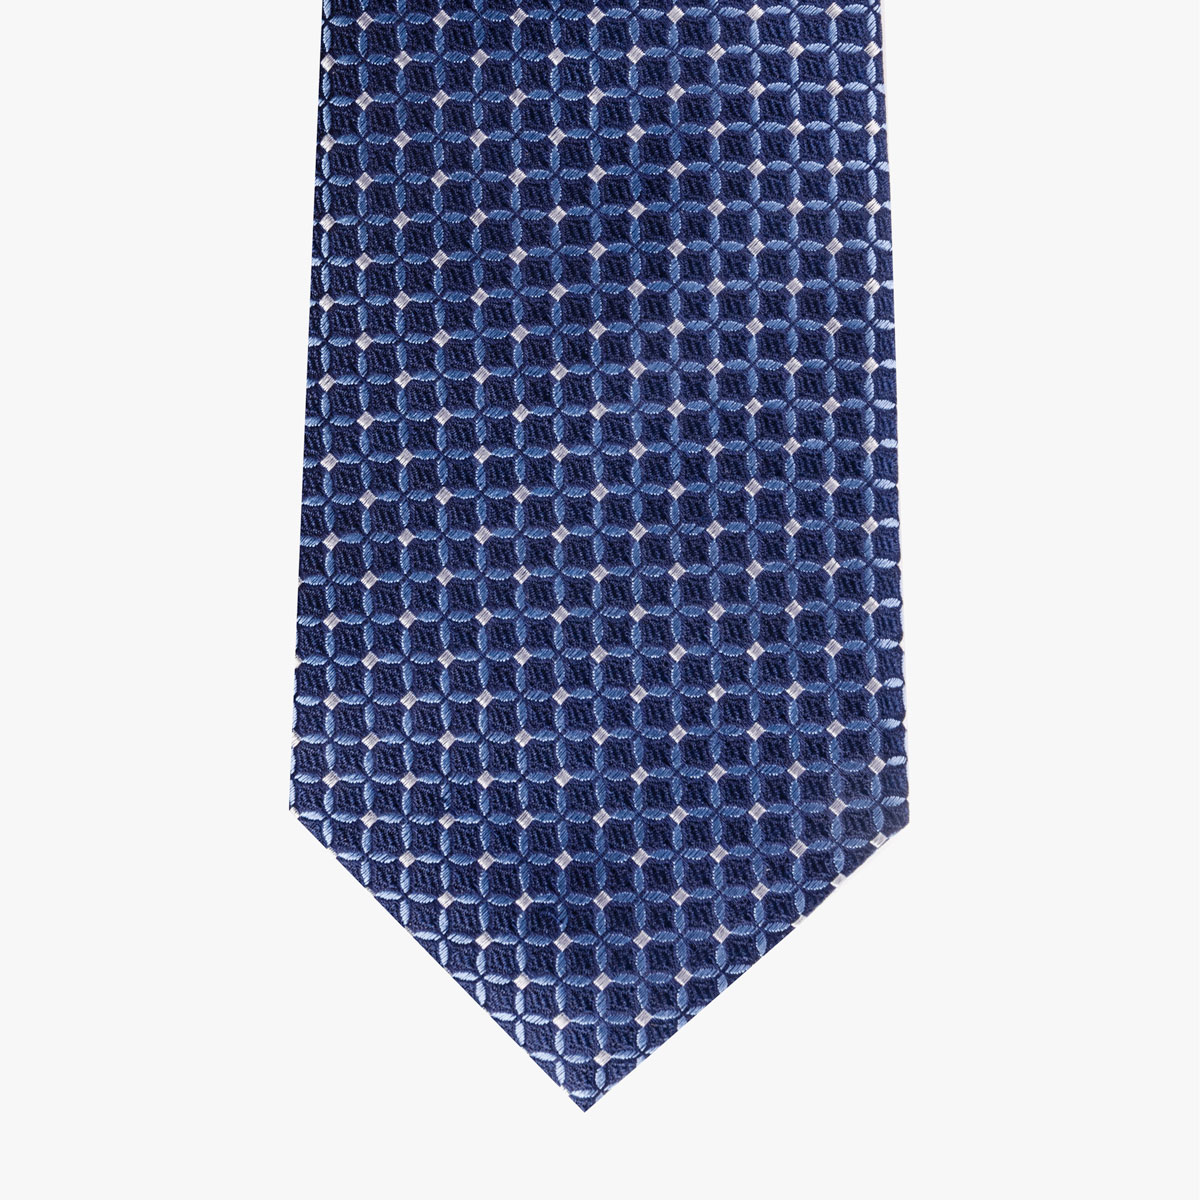 Krawatte aus Seide in dunkelblau mit hellem Muster